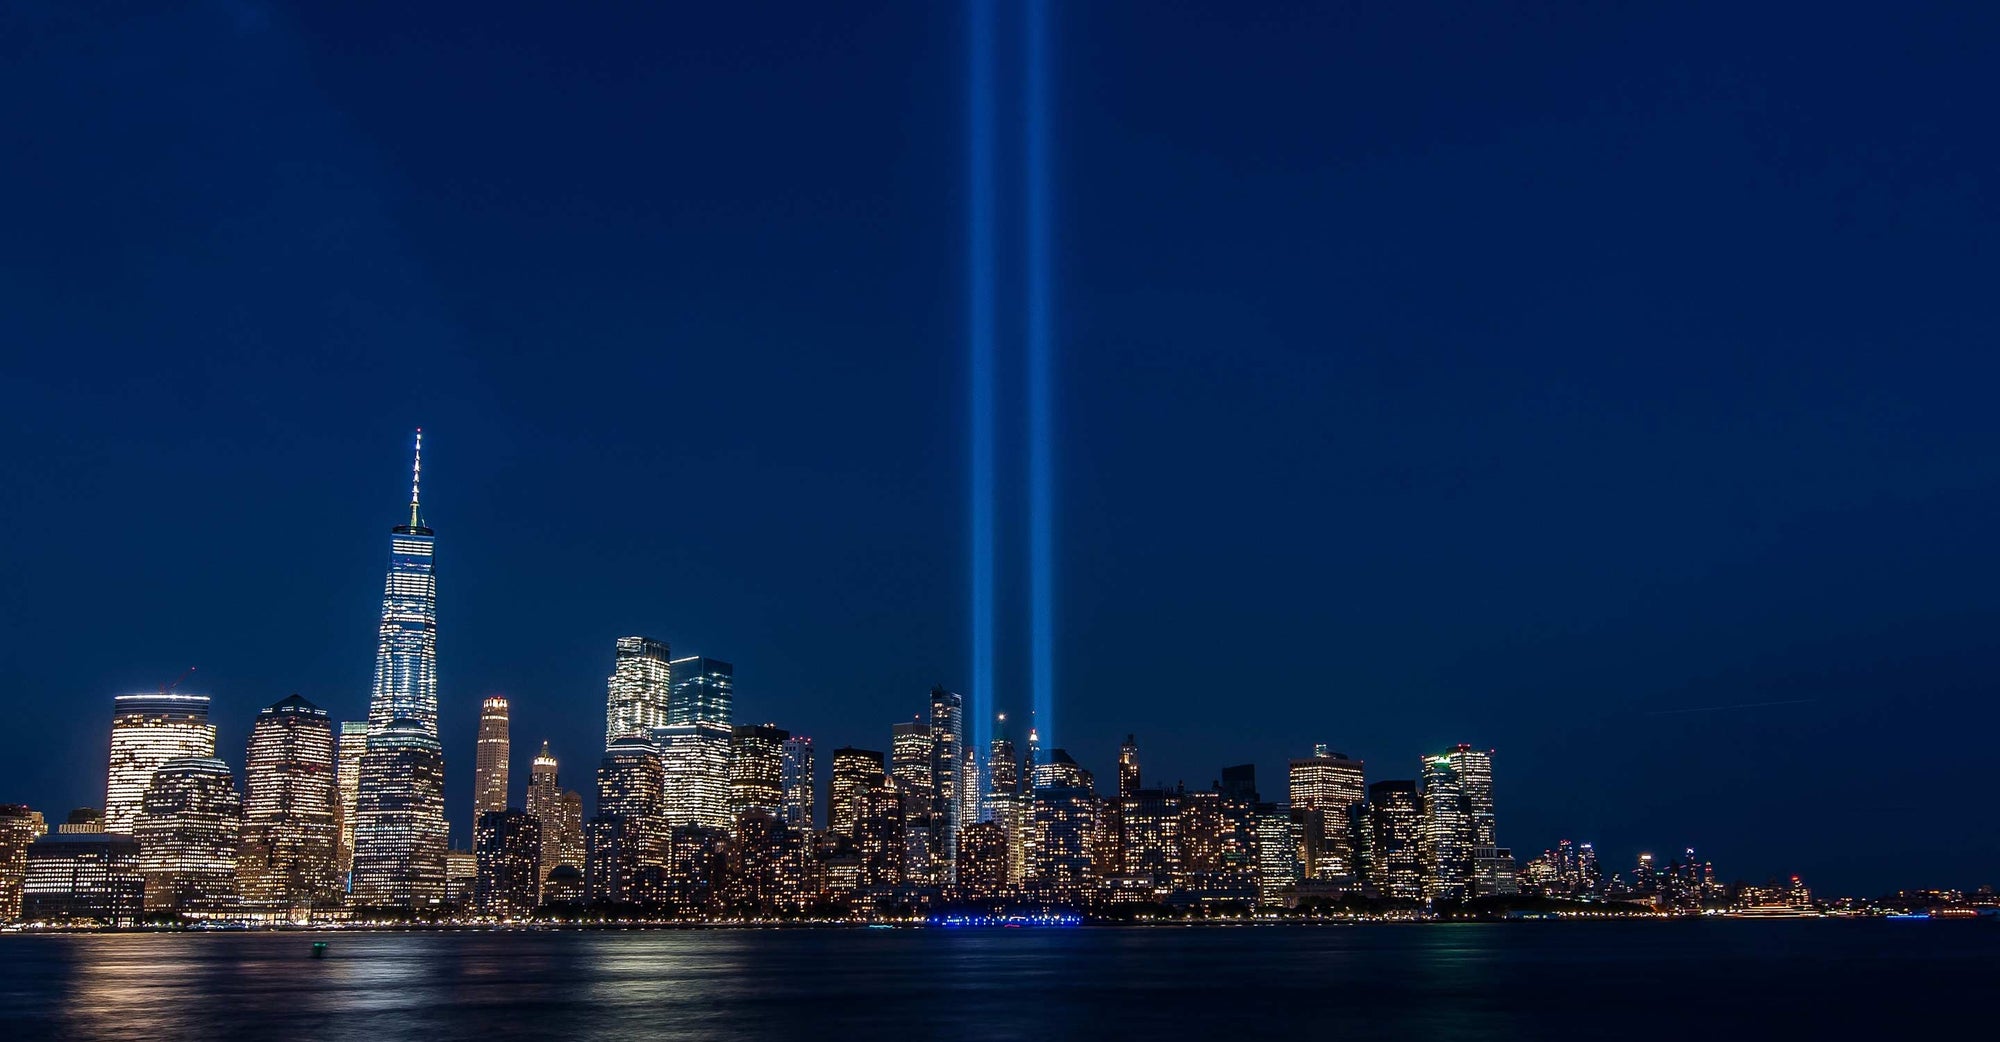 September 11 memorial night view